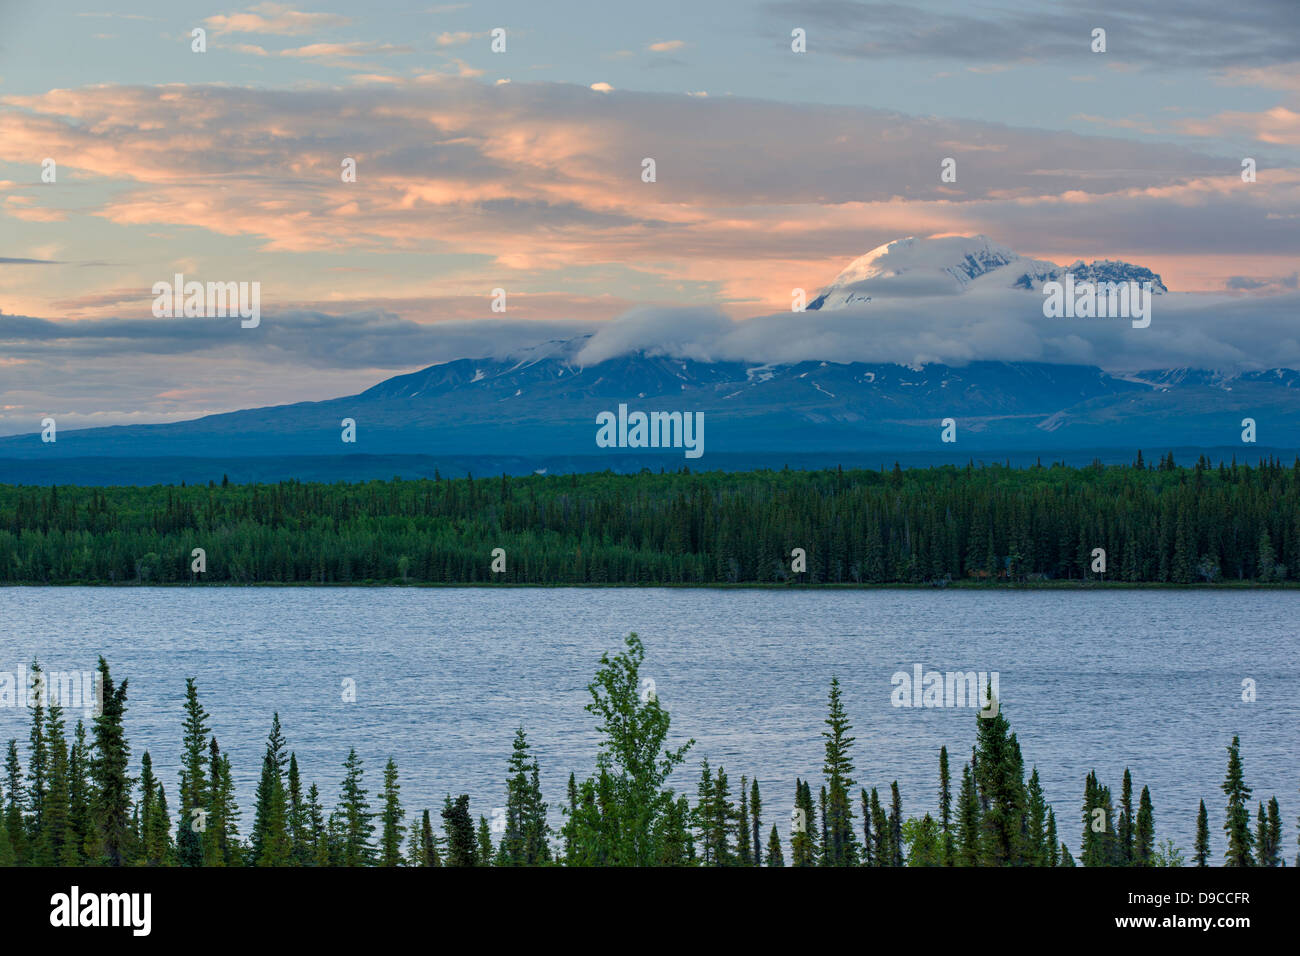 Sunset view of Willow Lake, Wrangell Mountains, Mt. Wrangell 14,163', and Wrangell Saint Elias National Park, Alaska, USA Stock Photo